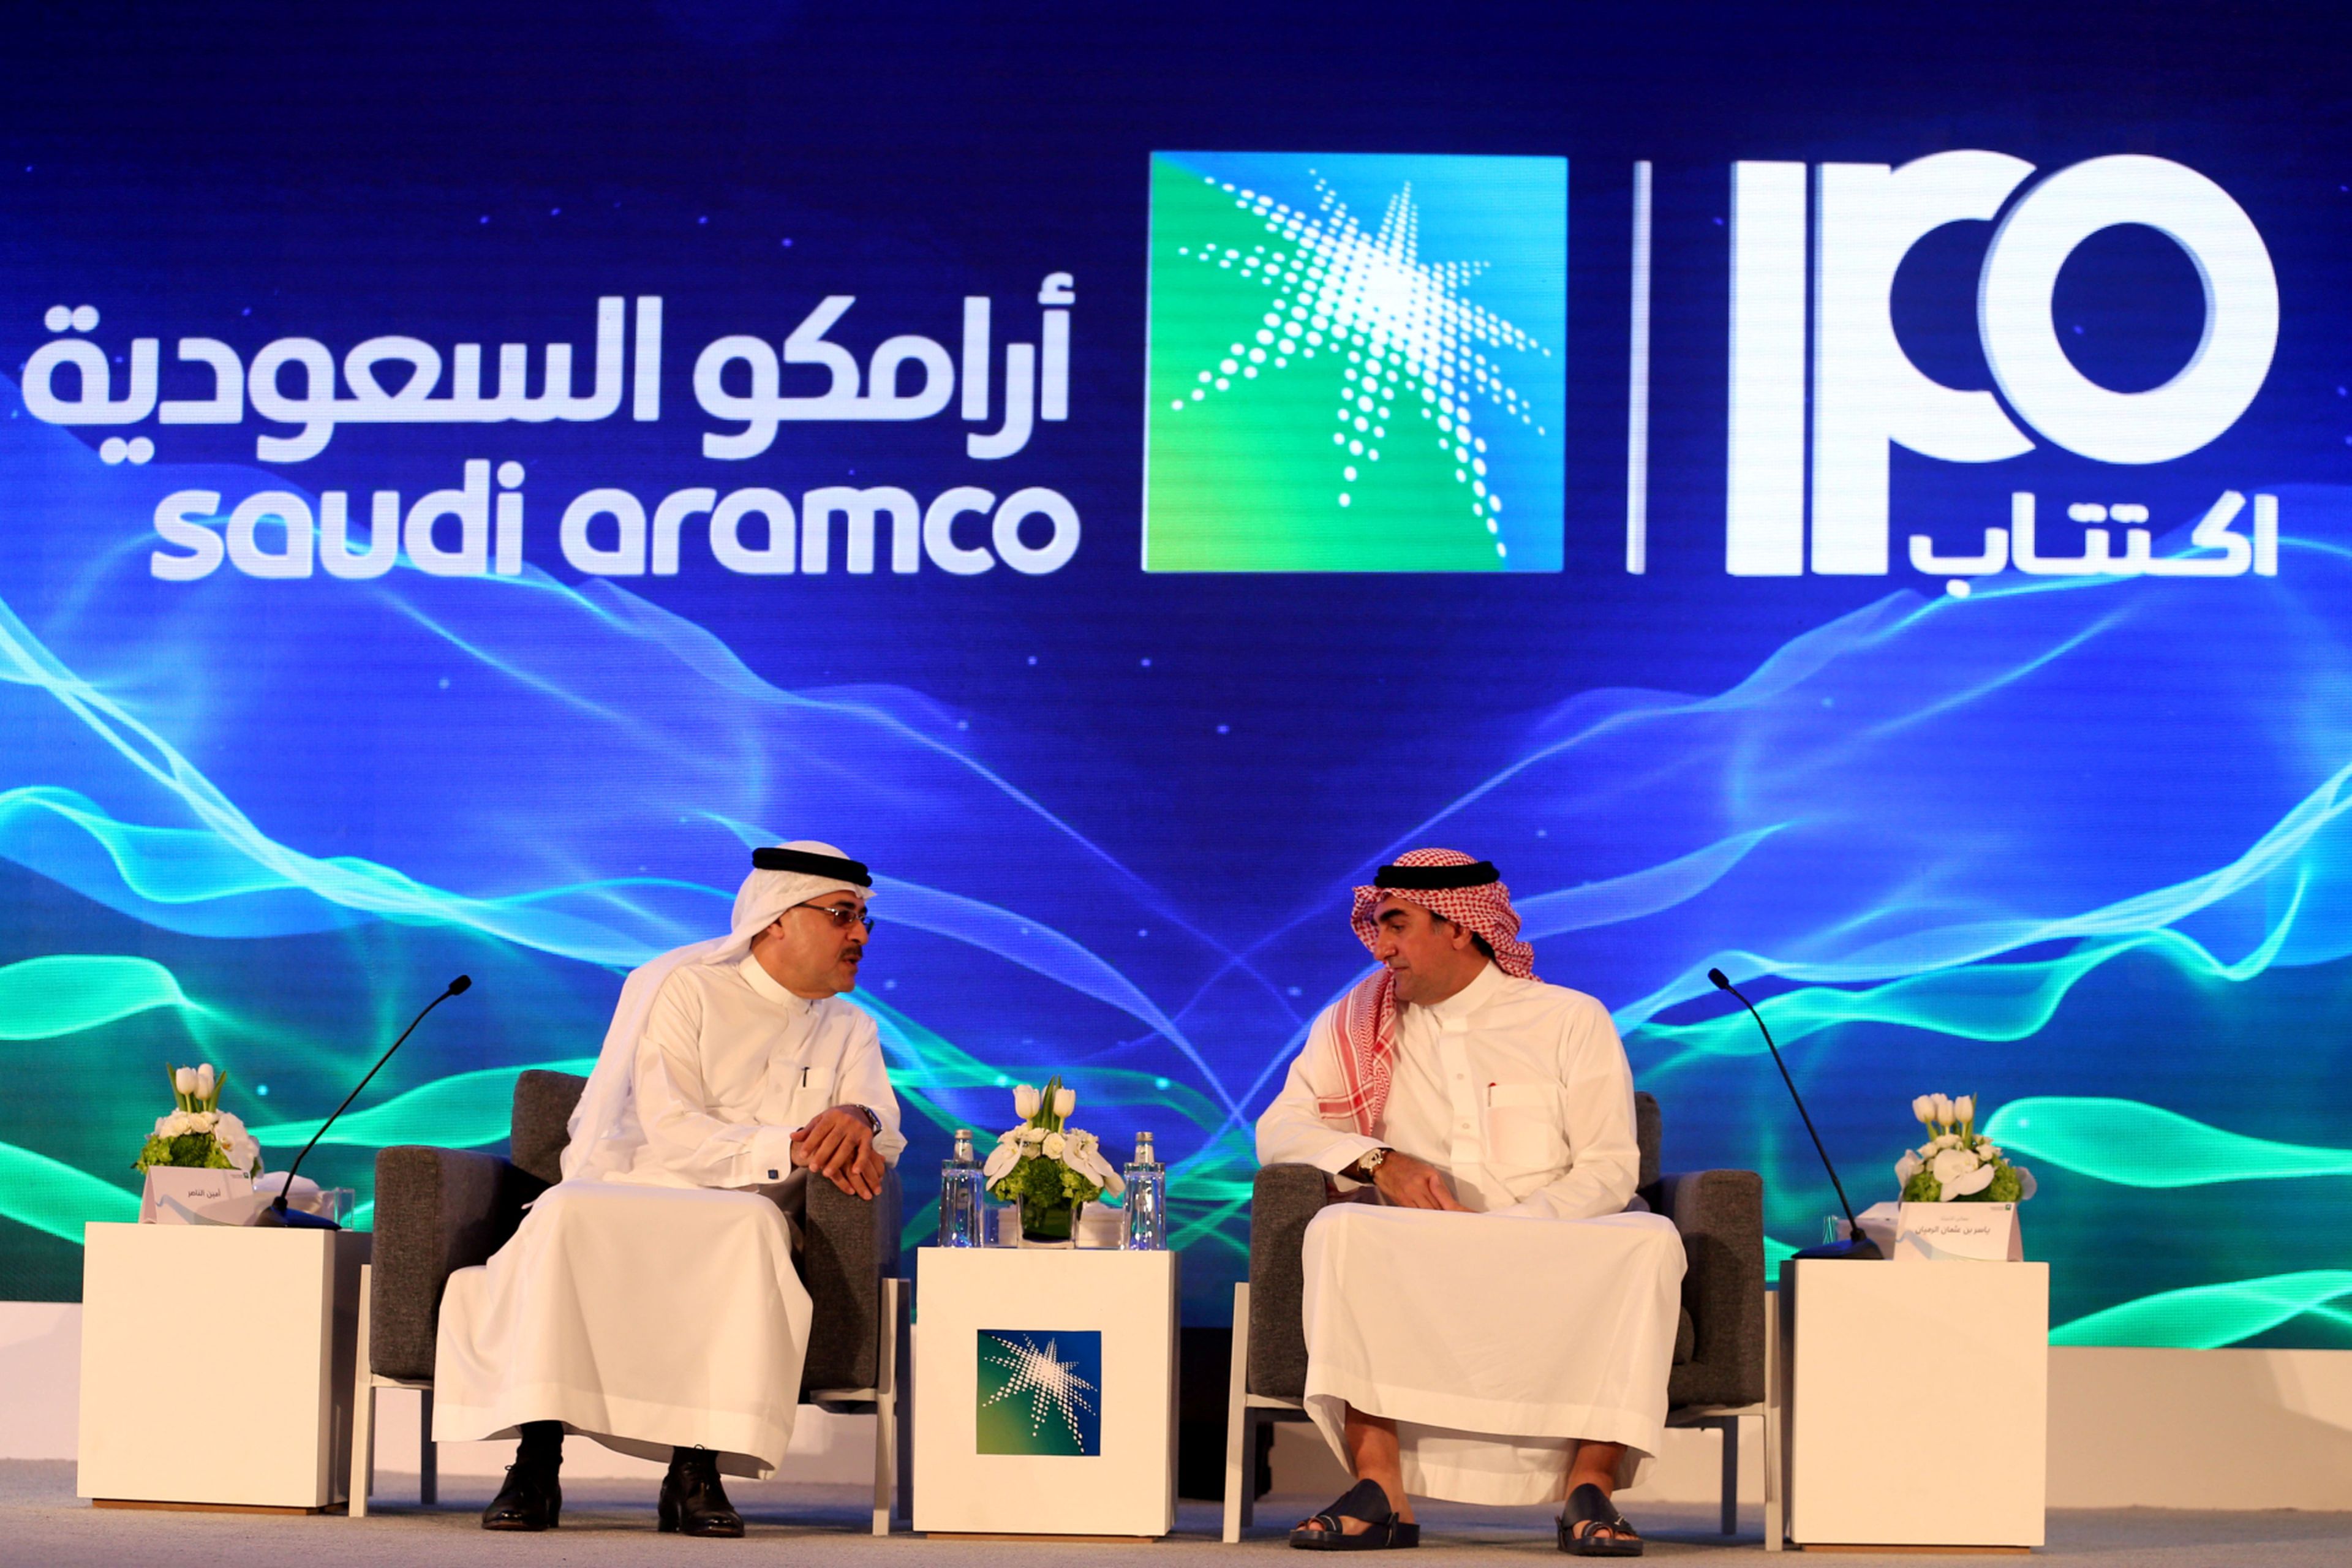 El presidente y CEO de Saudi Aramco, Amin Nasser, y el director de la petrolera, Yasser al-Rumayyan